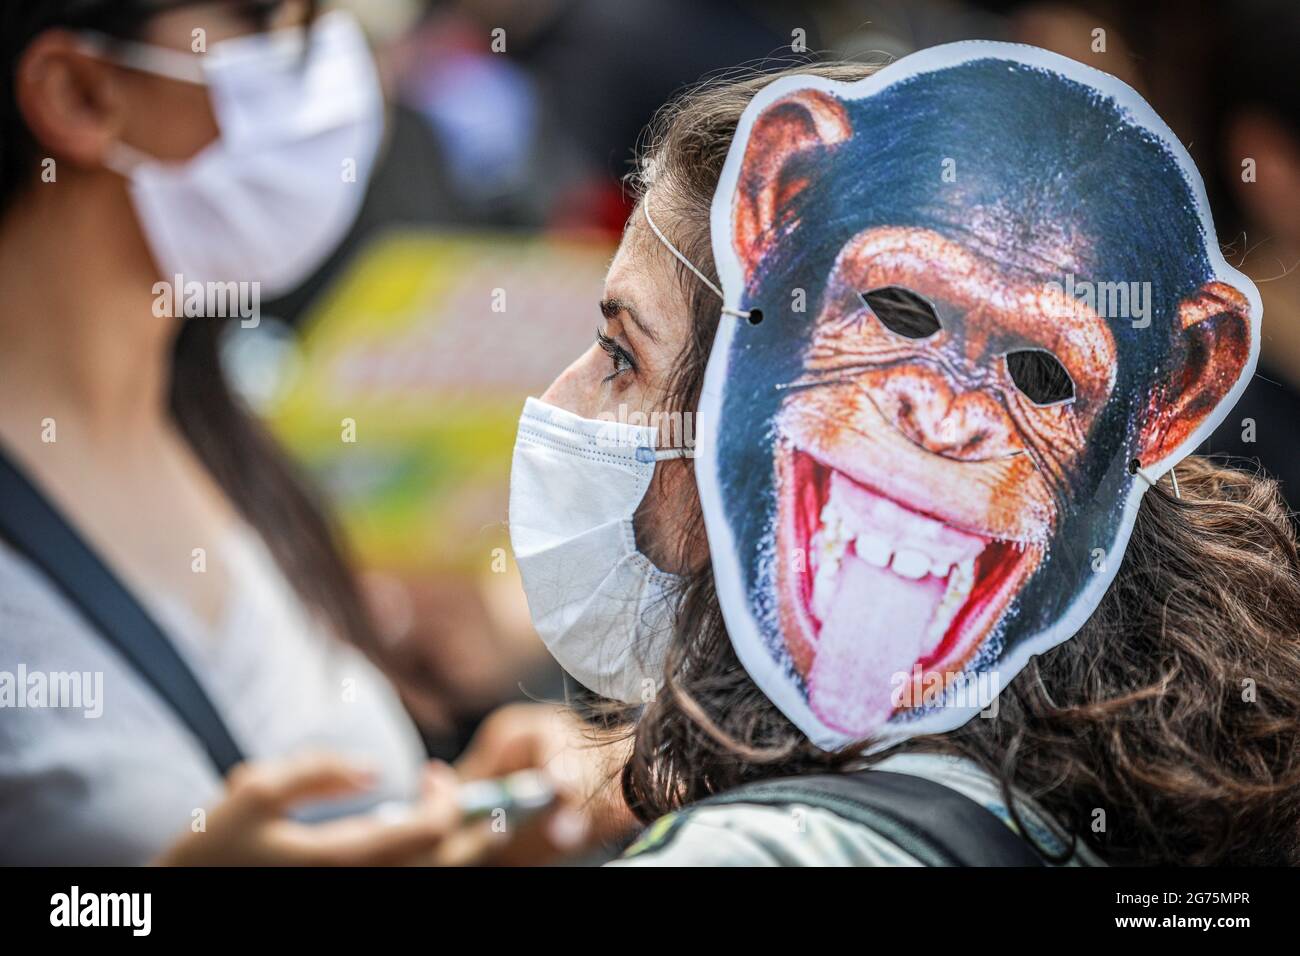 Un protester indossa una maschera di scimmia durante la dimostrazione. Gli attivisti e le organizzazioni per i diritti degli animali hanno protestato contro la legge sui diritti degli animali approvata alla Grande Assemblea nazionale turca (TBMM), che non era sufficiente. (Foto di Tunahan Turhan / SOPA Images/Sipa USA) Foto Stock